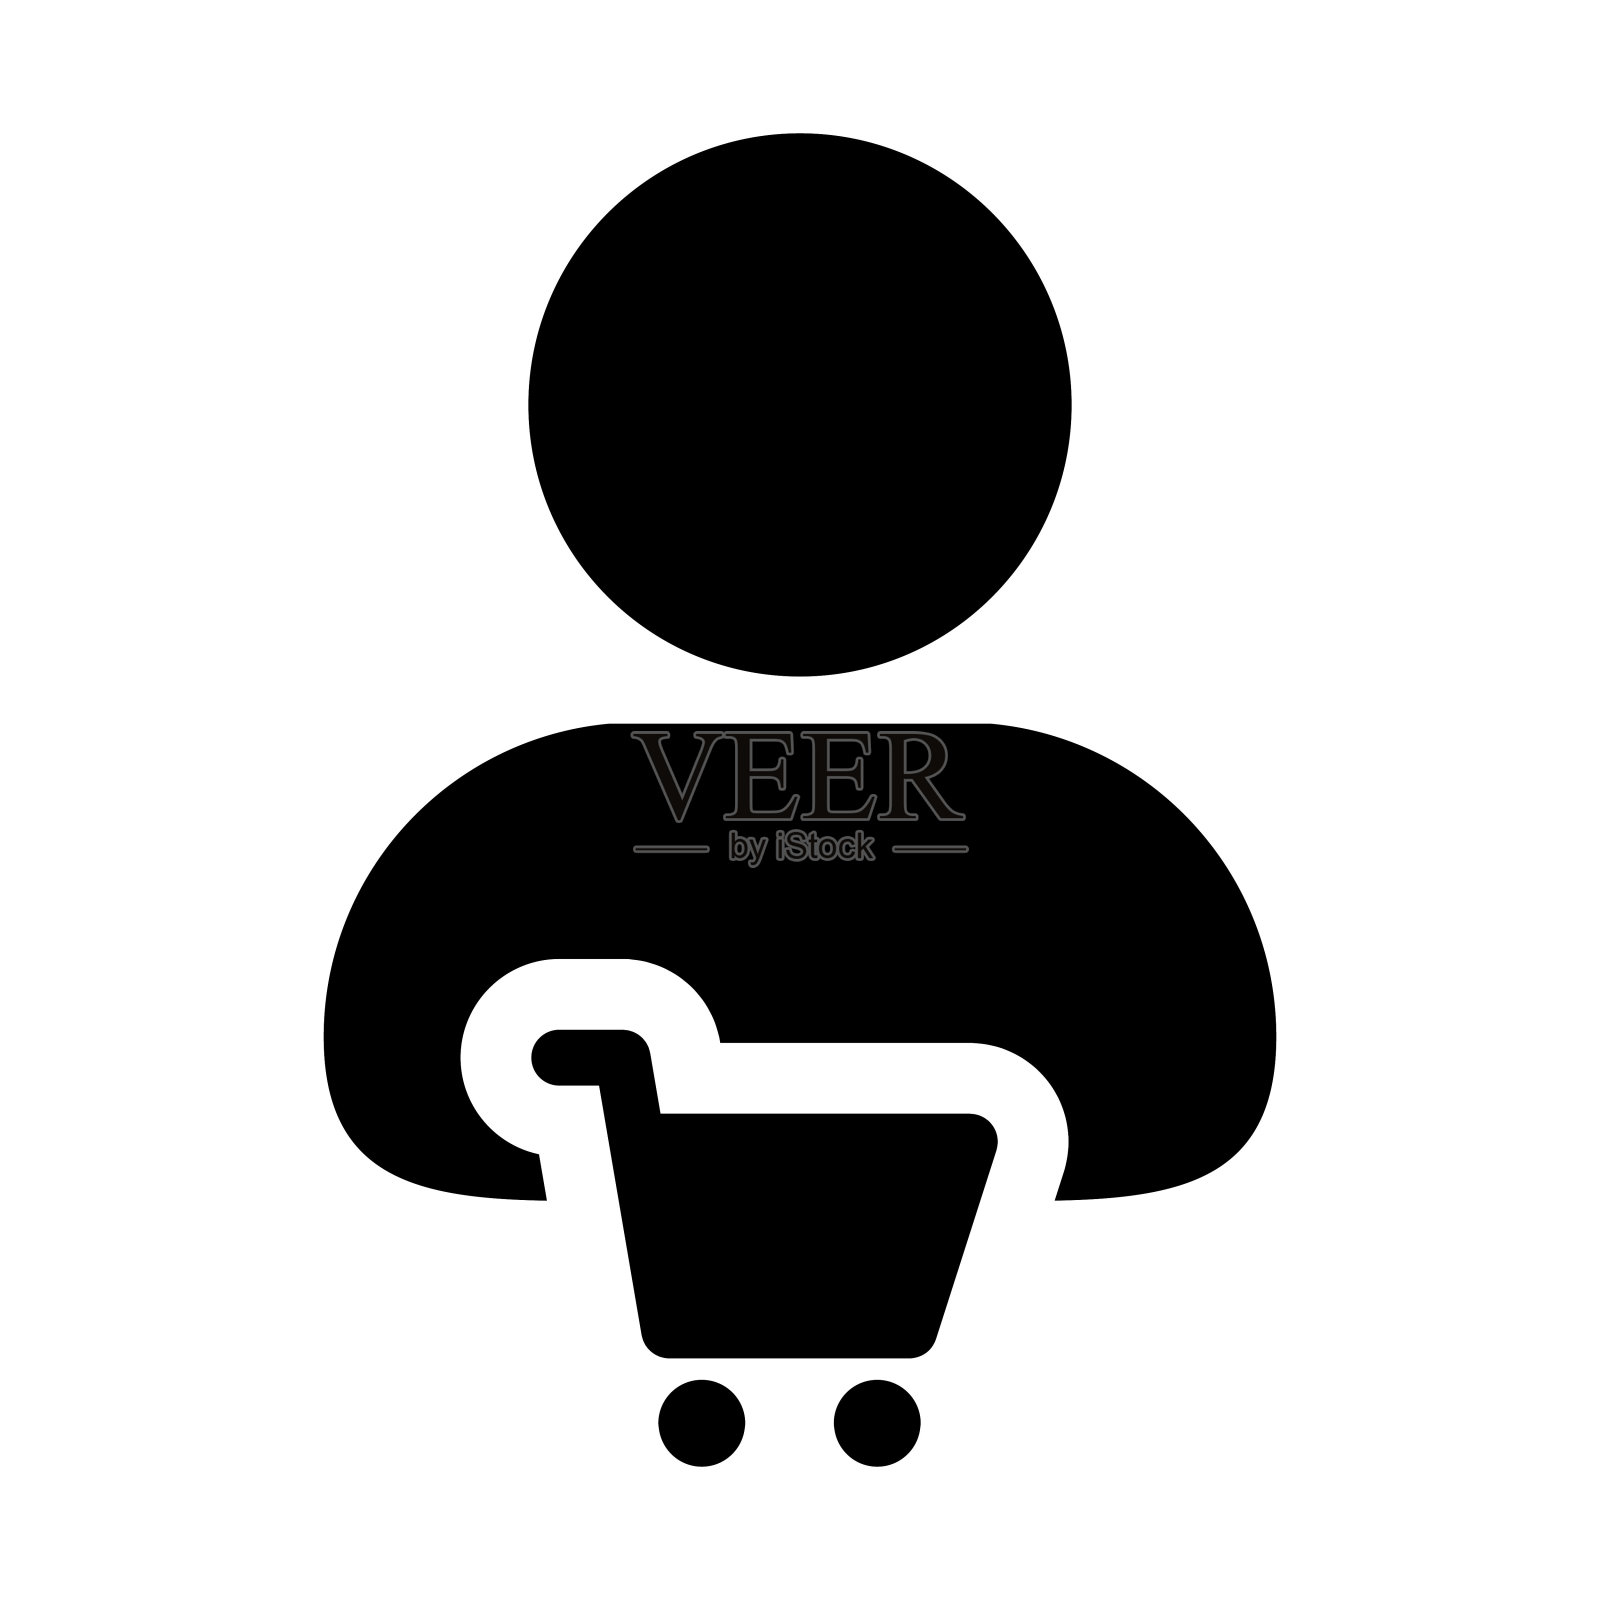 购物车图标向量与男性顾客个人资料头像符号购买商品在字形象形图图标素材